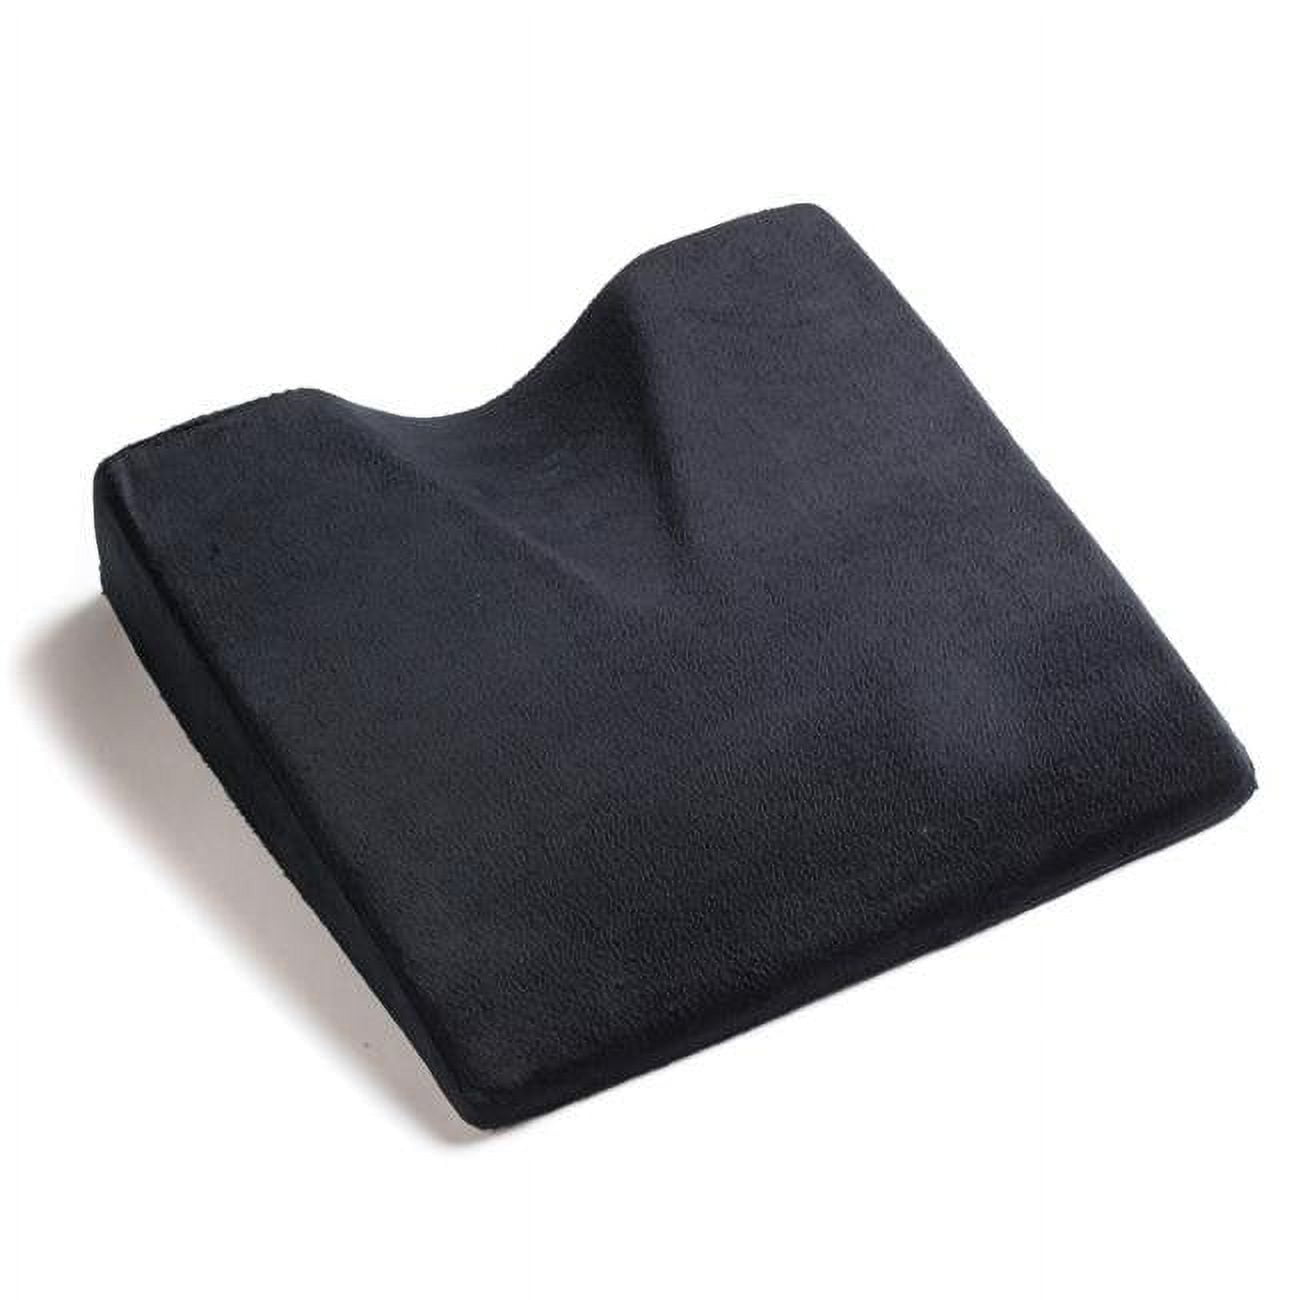 Wedge Black Memory Foam Wedge Seat Cushion, Black